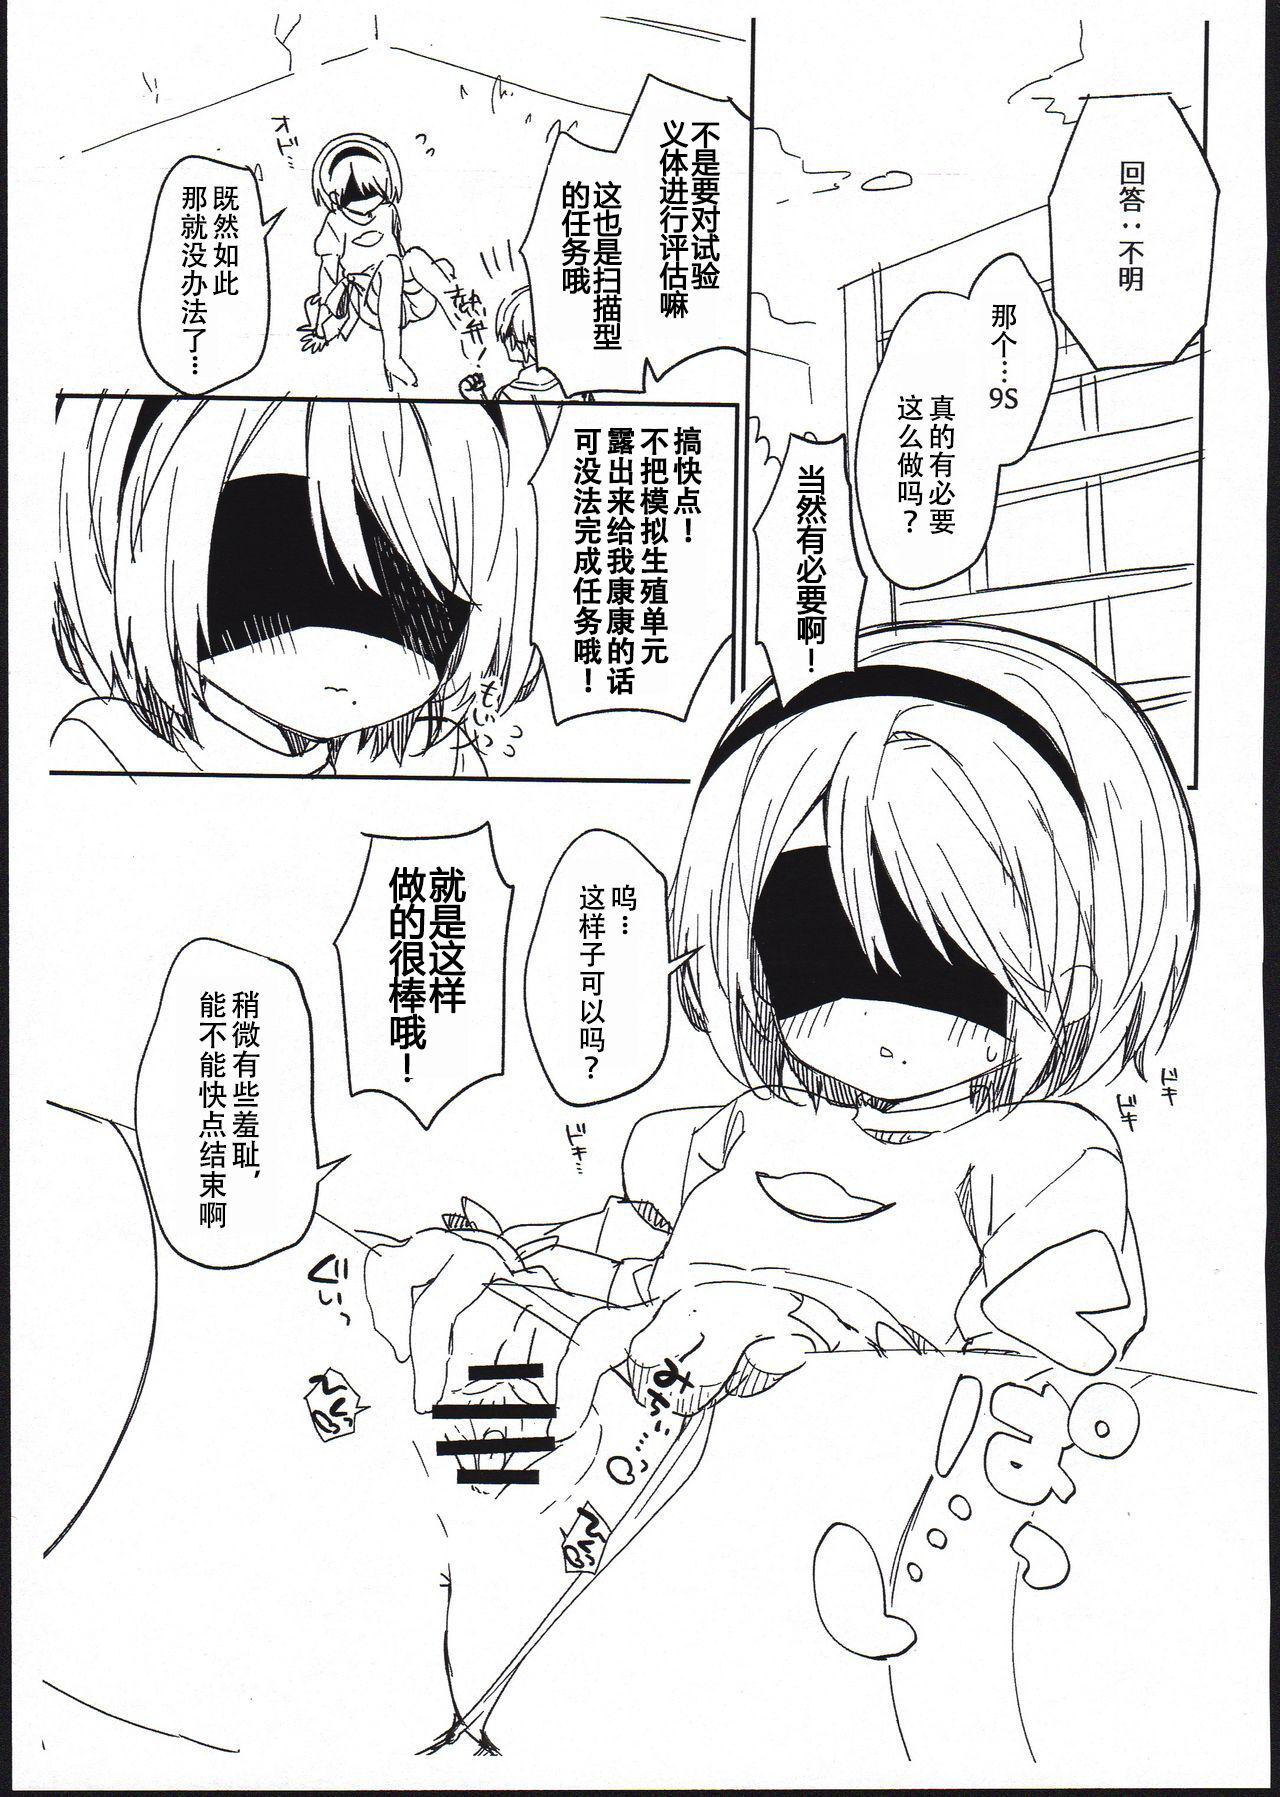 Nice Tits YoRHa Kitai 2B no Shoushizaika Gitai Unyou Shiken ni Kansuru Houkoku - Nier automata Legs - Page 4